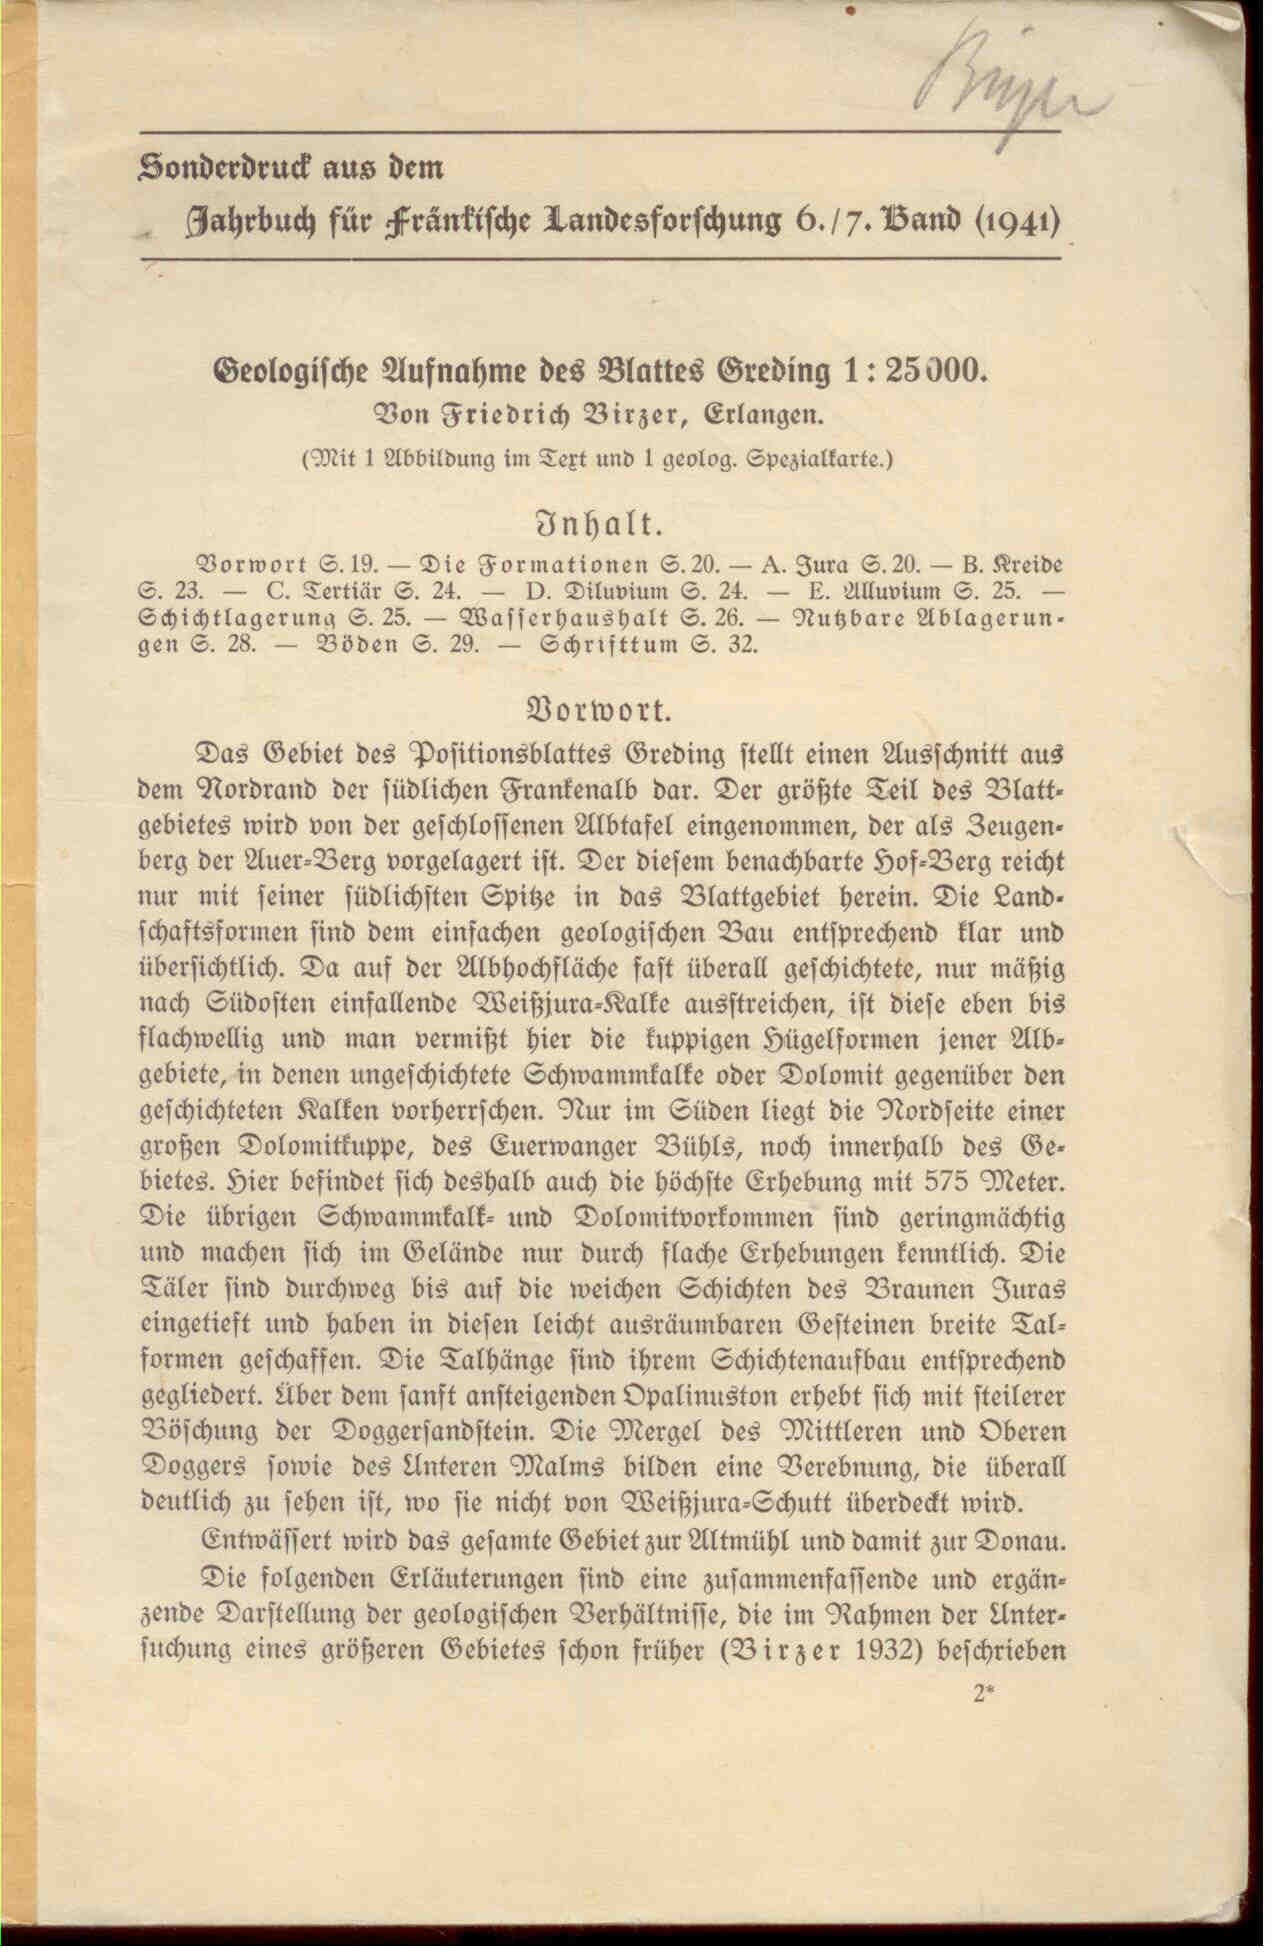 Birzer, F.: Geologische Aufnahme des Blattes Greding 1:25 000